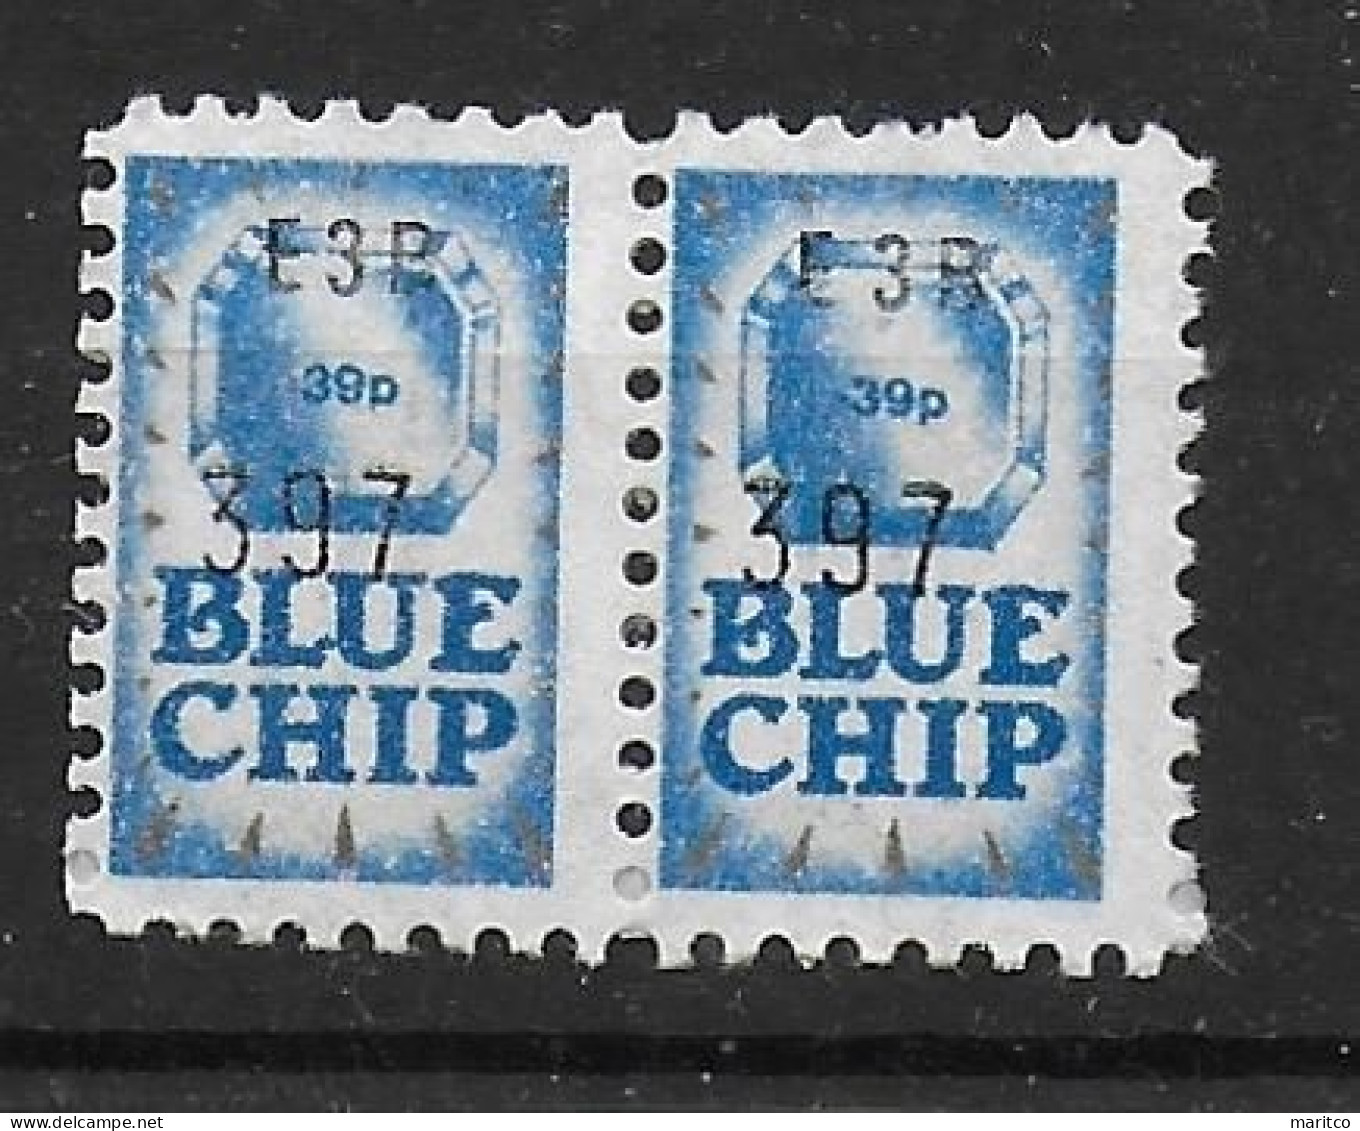 GB Savings Blue Chip Spendenmarke Cinderella Vignet Werbemarke Propaganda - Vignettes De Fantaisie